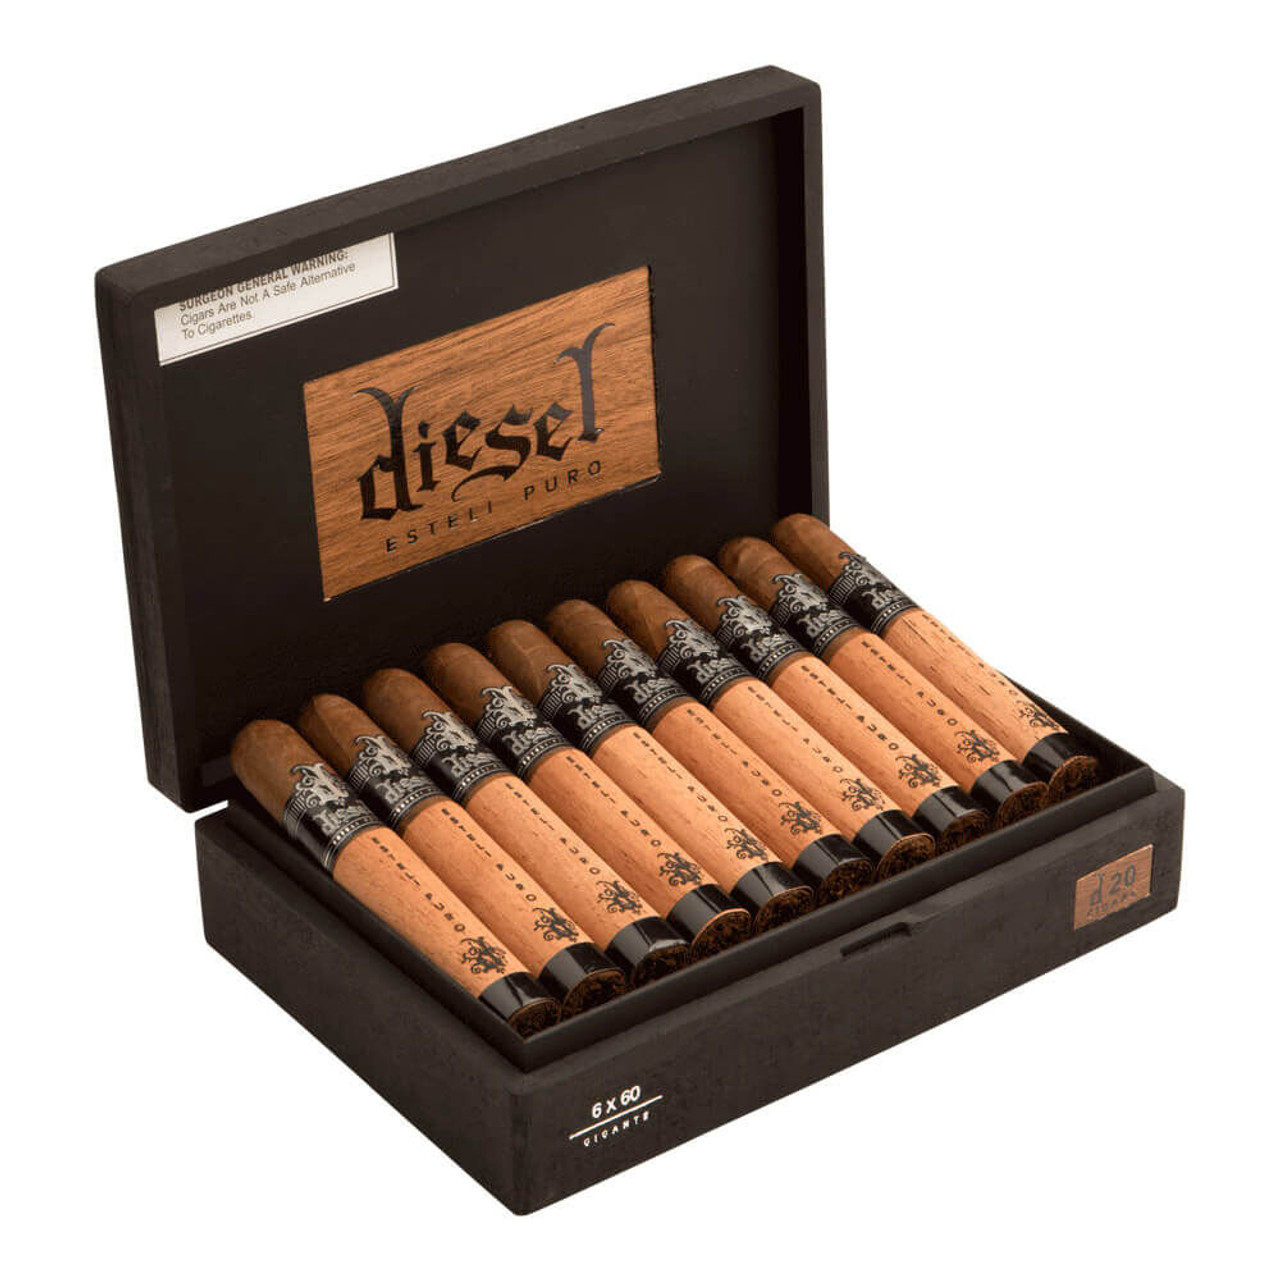 Diesel Esteli Puro Gigante Cigars - 6 x 60 (Box of 20) Open